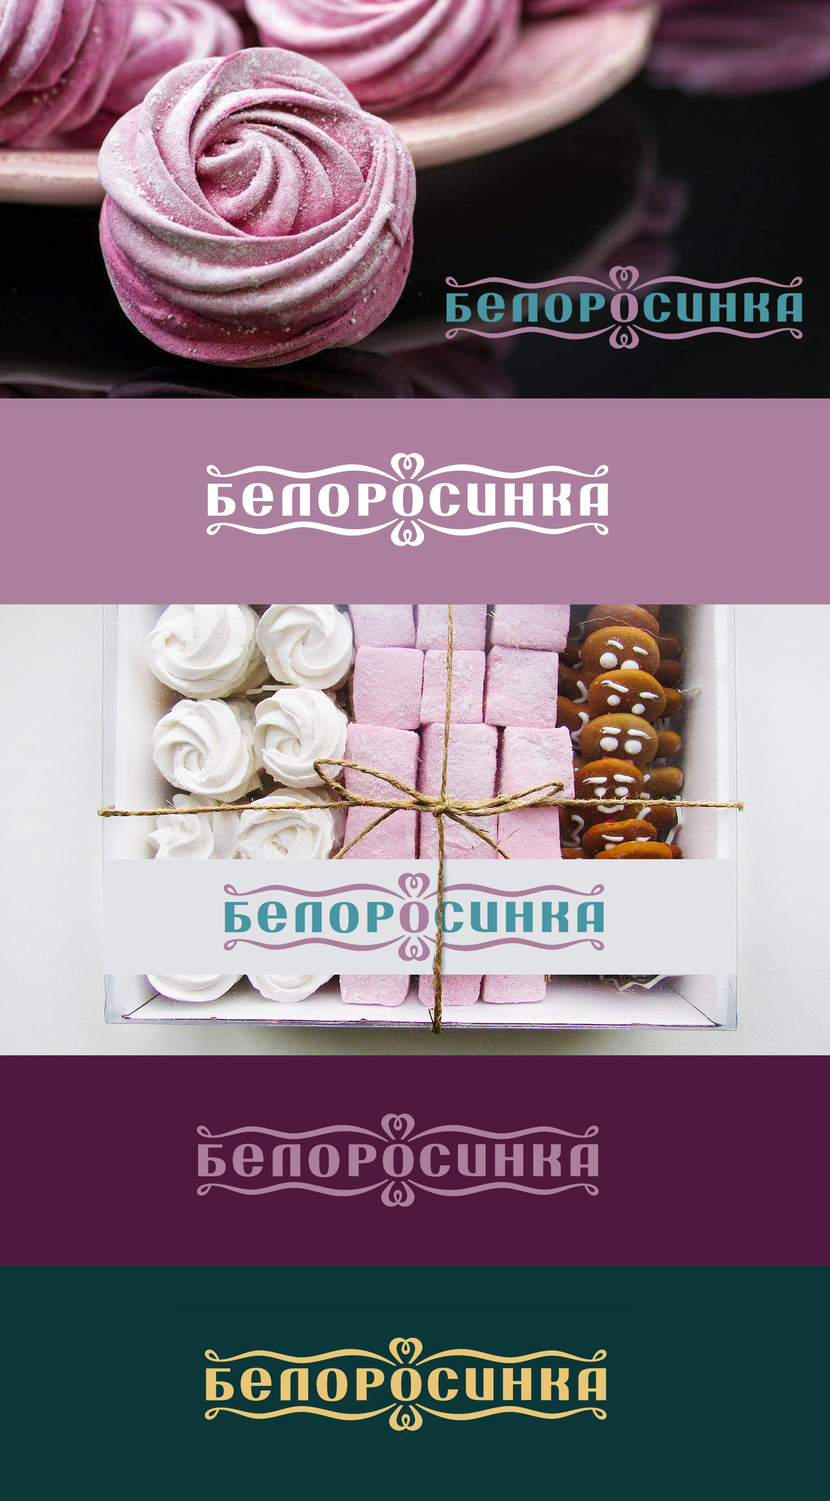 + Логотип для кондитерских изделий торговой марки БЕЛОРОСИНКА